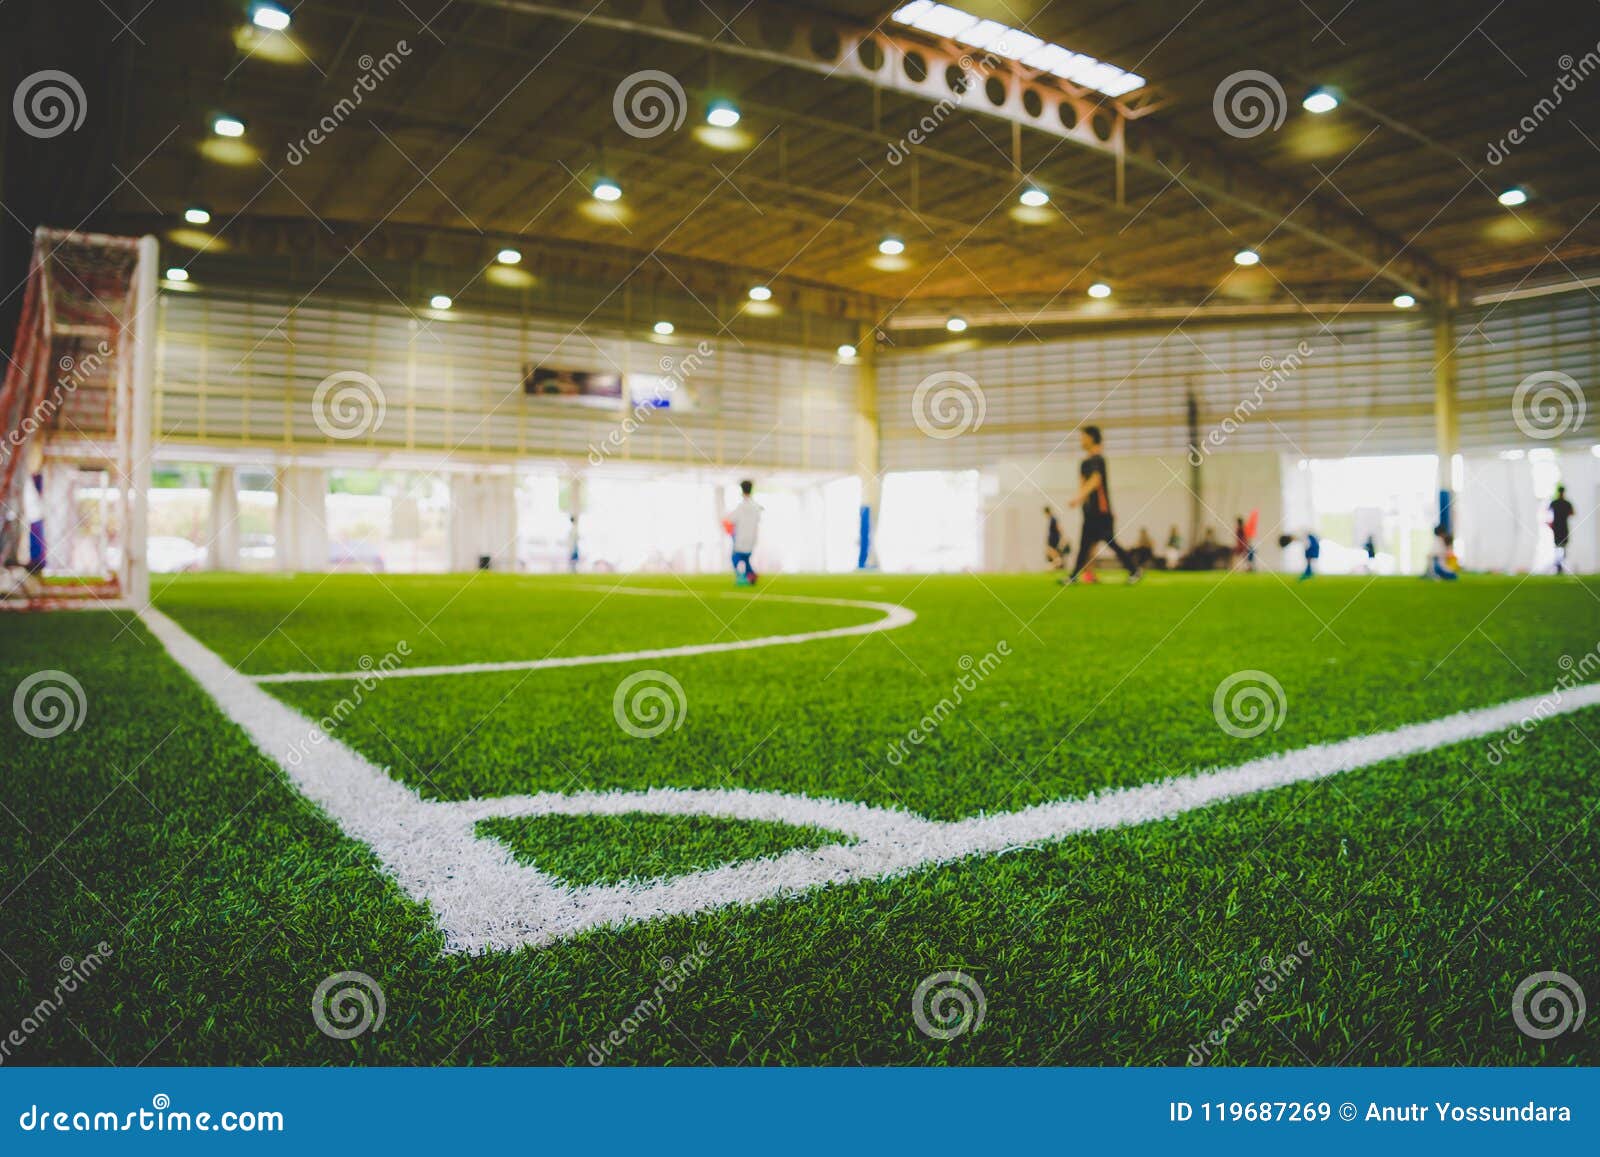 corner line of indoor football soccer training field